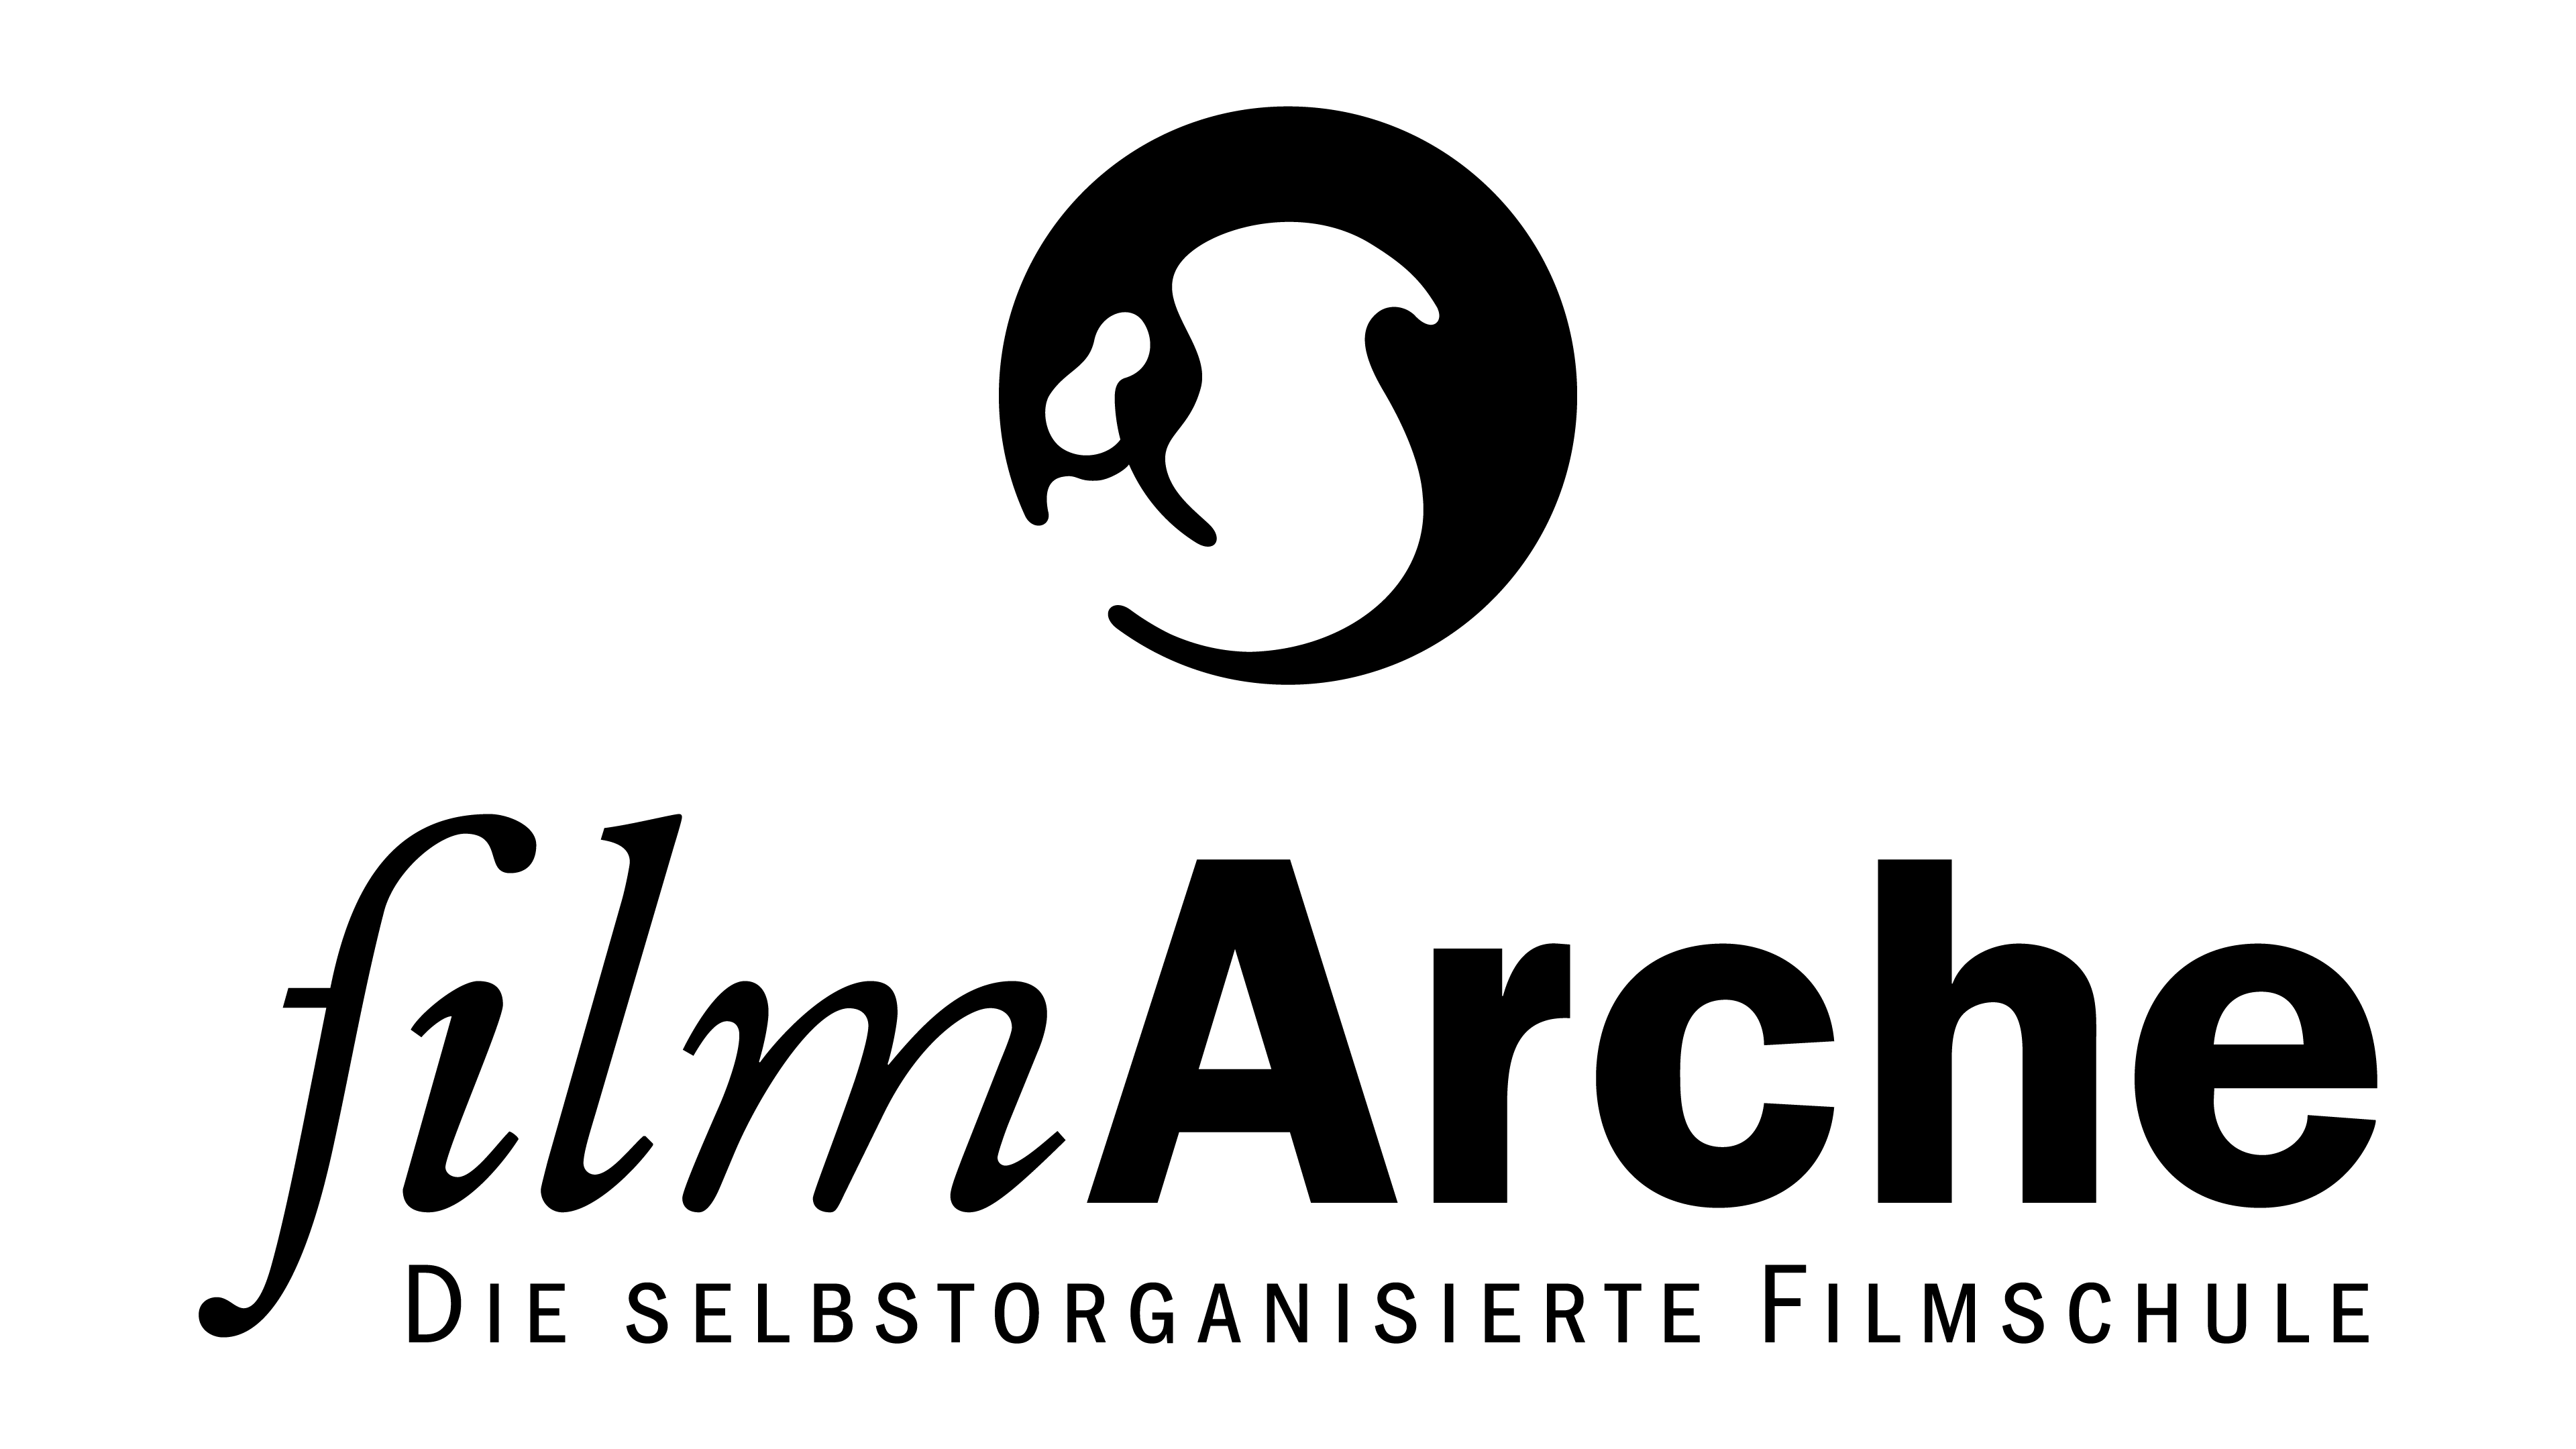 Filmarche Logo Vert Black 4k Filmarche 1431